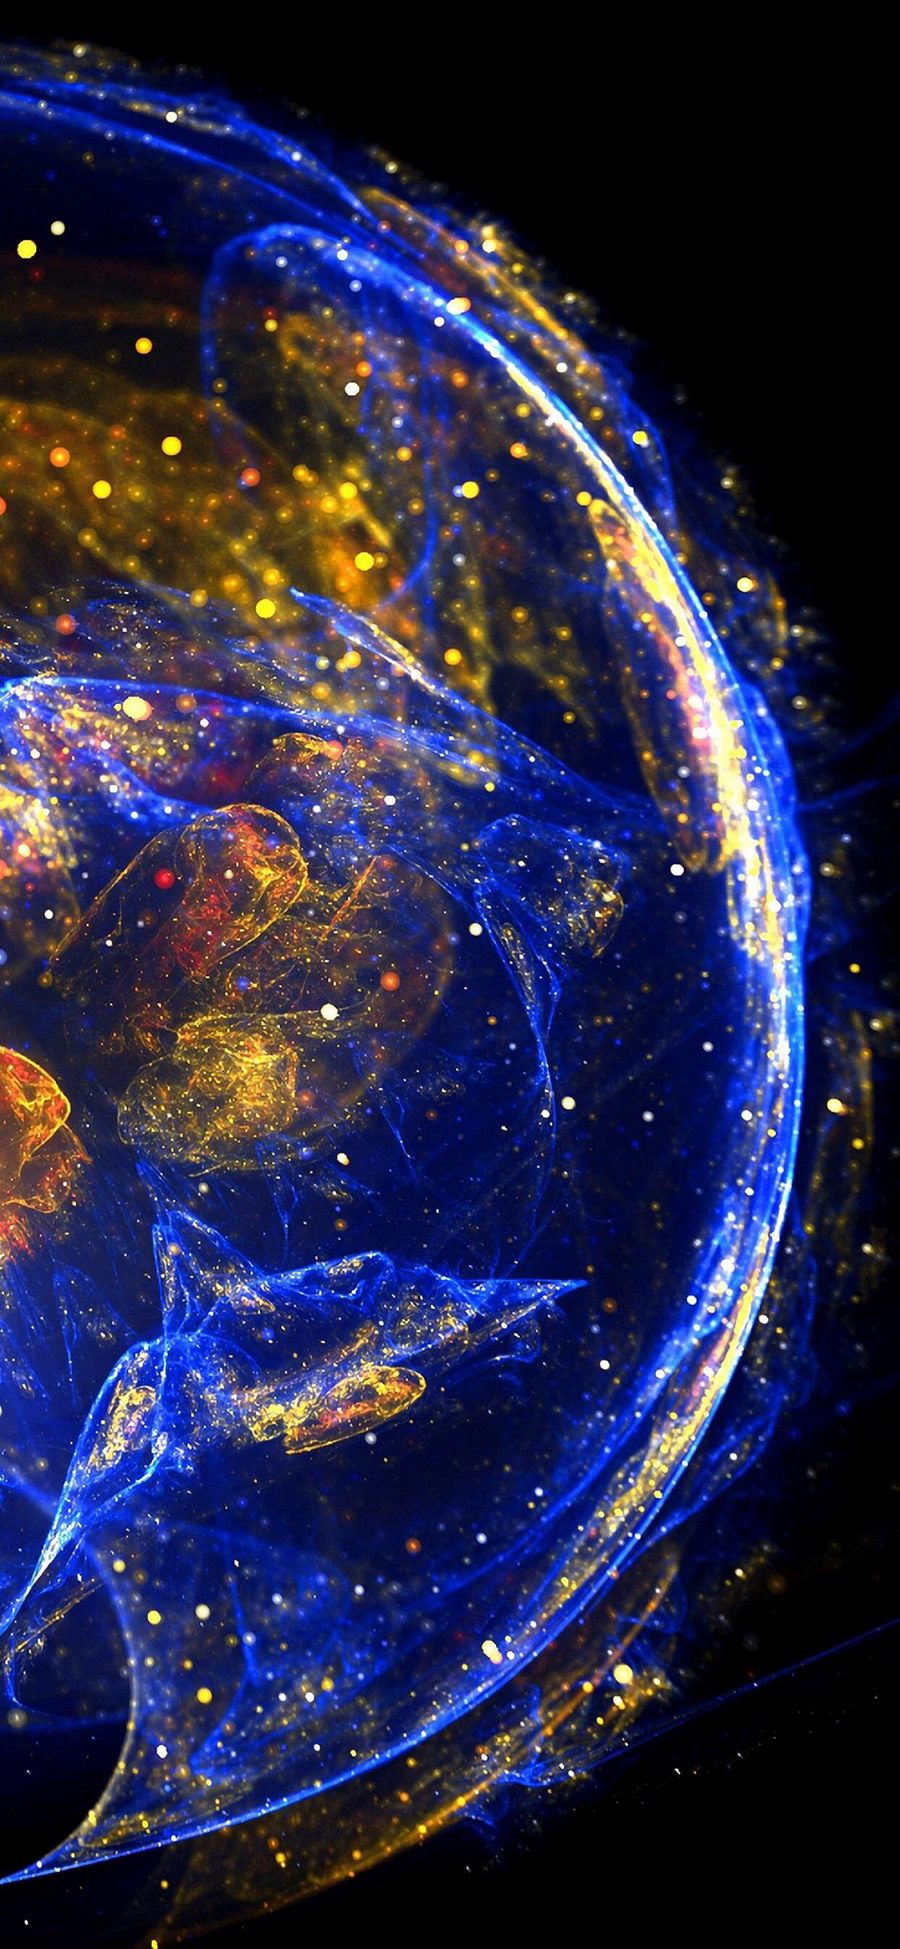 [2436×1125]水母 海洋生物 浮游 荧光 炫彩 苹果手机壁纸图片